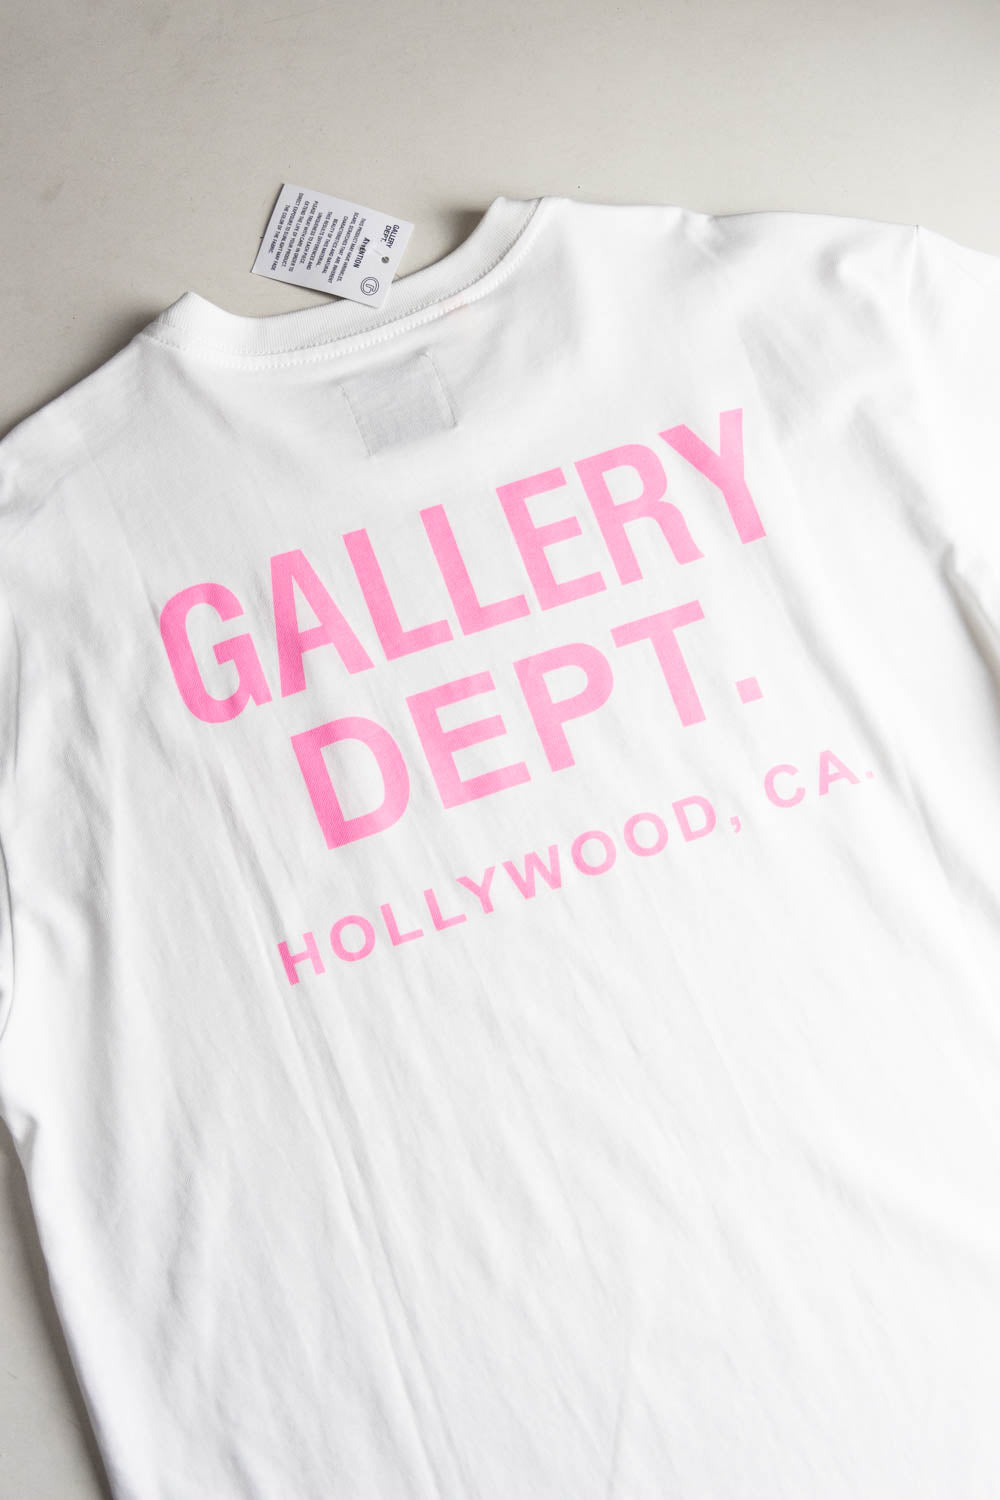 Gallery Dept. Logo Print T-Shirt White/Pink